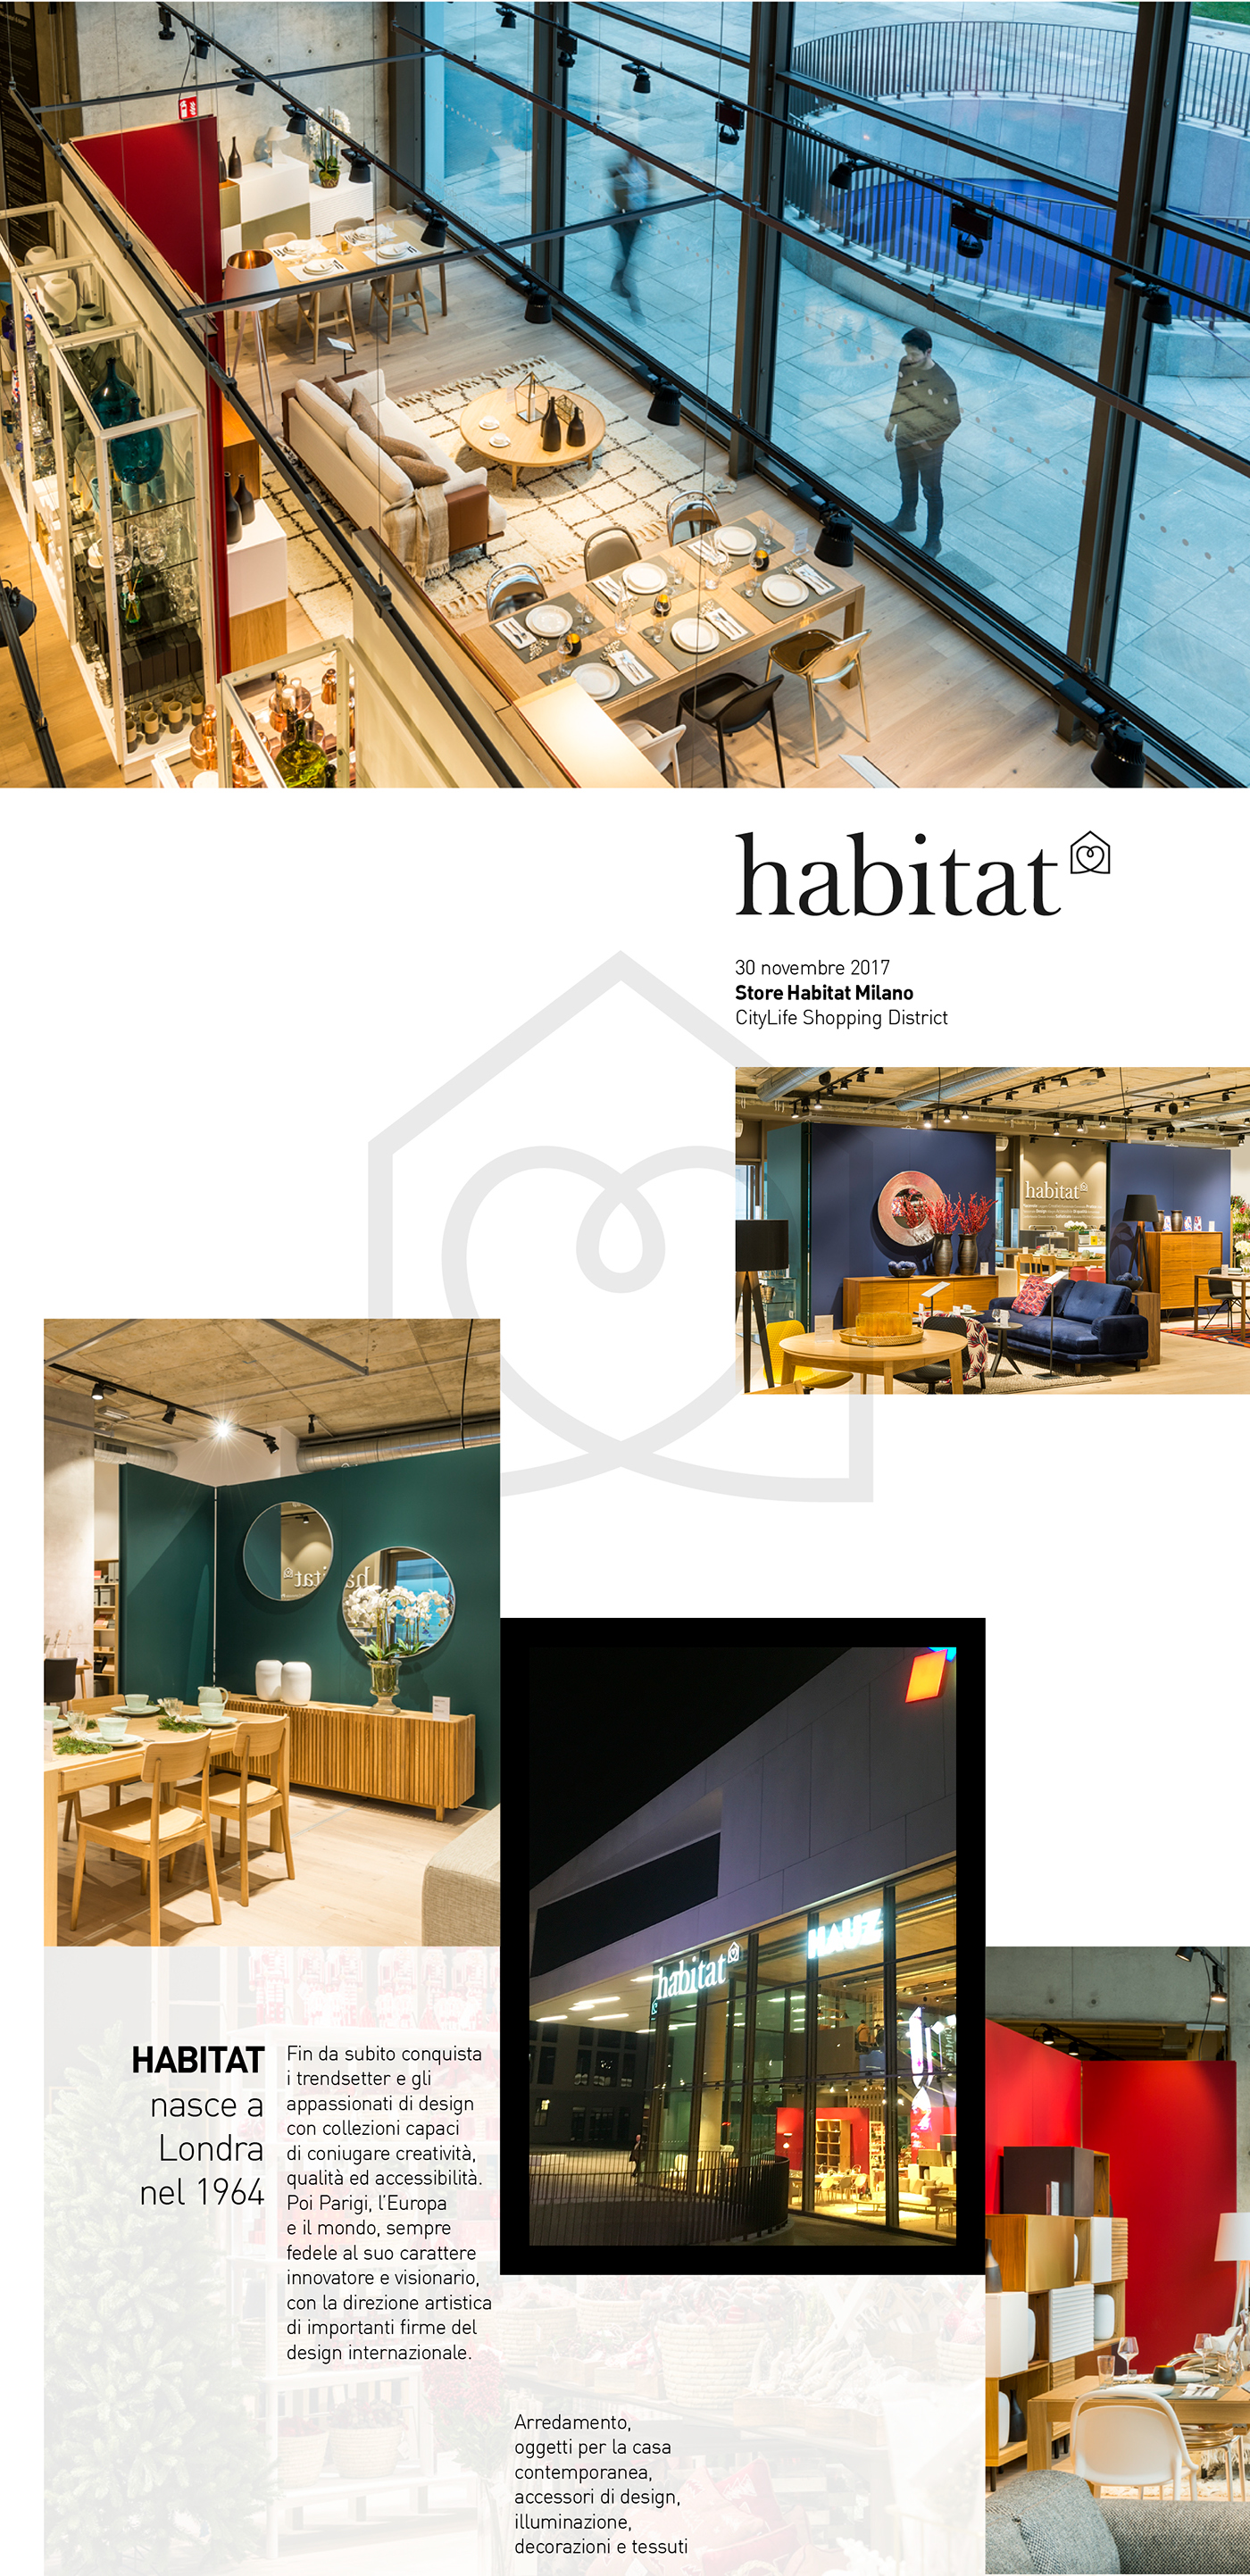 habitat Citylife retails store shop